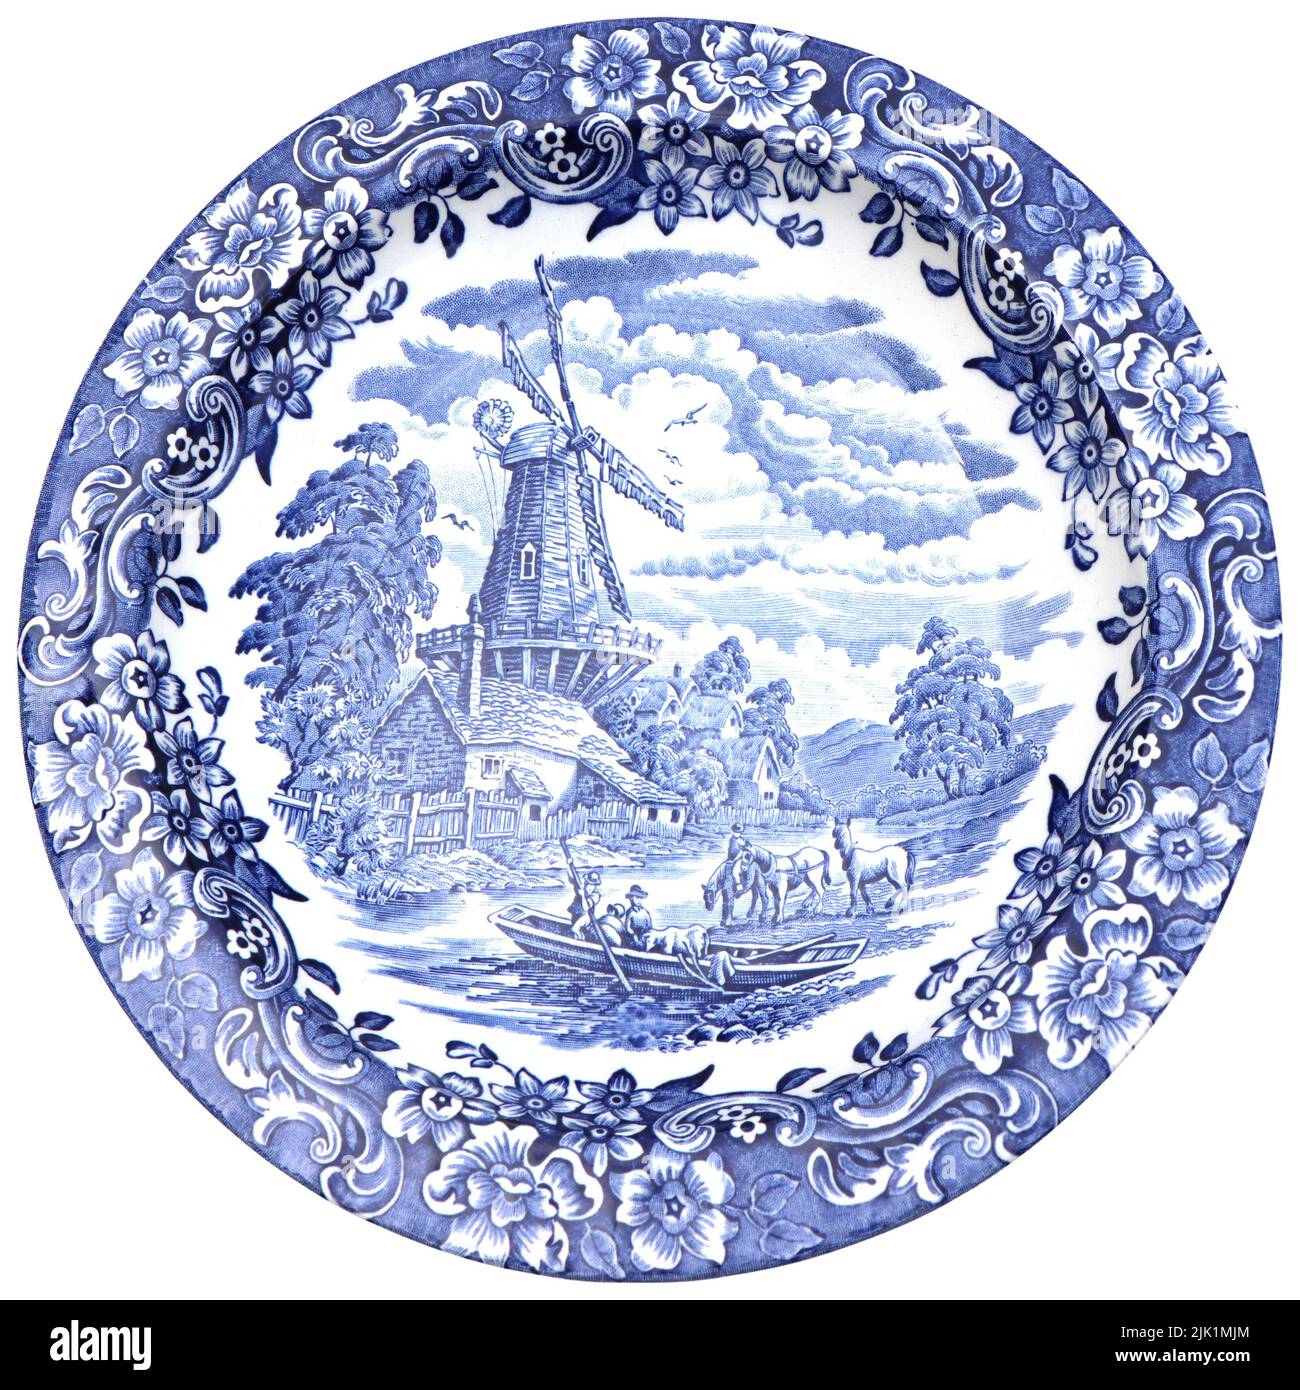 Placas de cerámica azul y blanca con paisaje tradicional holandés, canales, barcos, molinos de viento, aislados Foto de stock